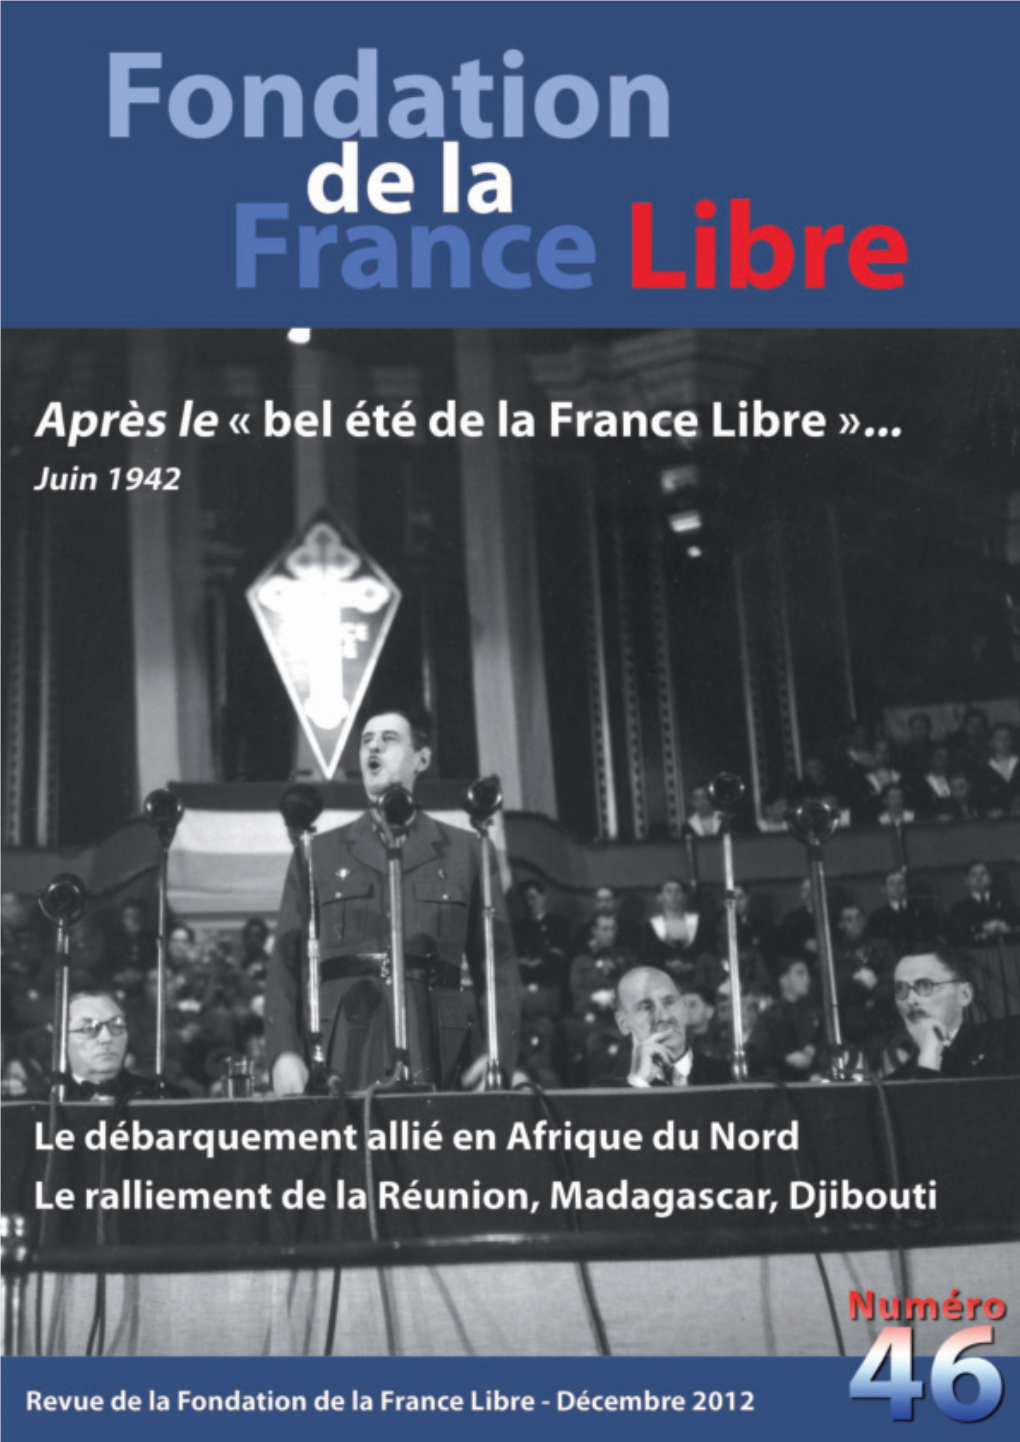 De Tananarive À Diego-Suarez 35 Jours De Marche, Pour S’Engager Dans Les Forces Françaises Libres